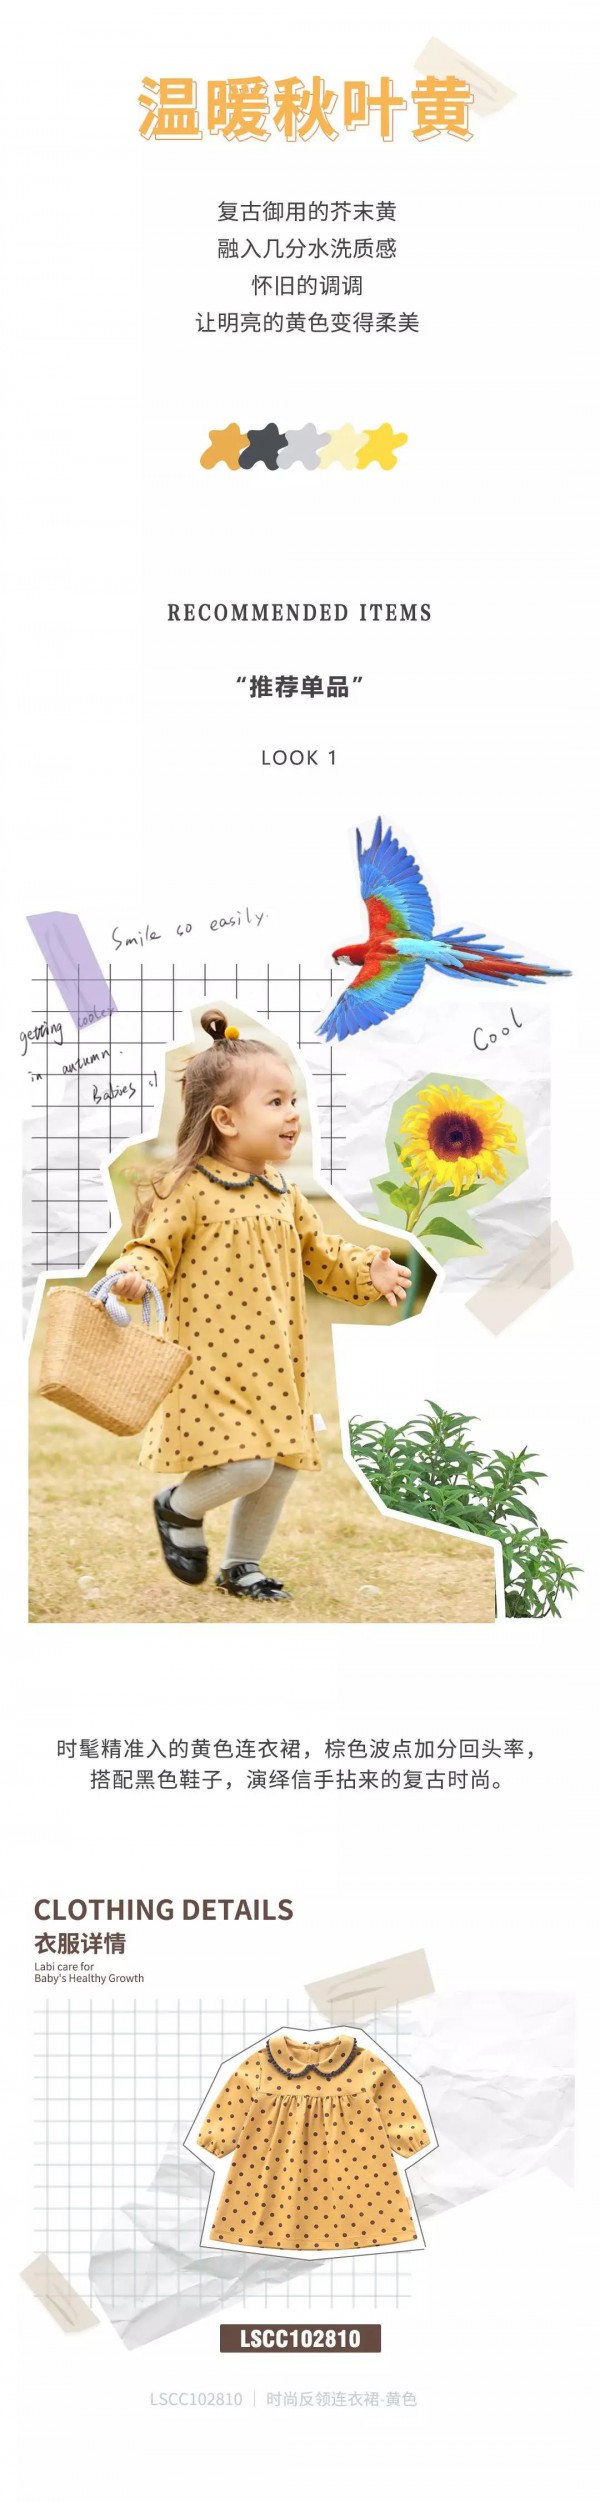 拉比LABIBABY童装品牌   秋装上新让小宝宝在秋天也要穿的出色